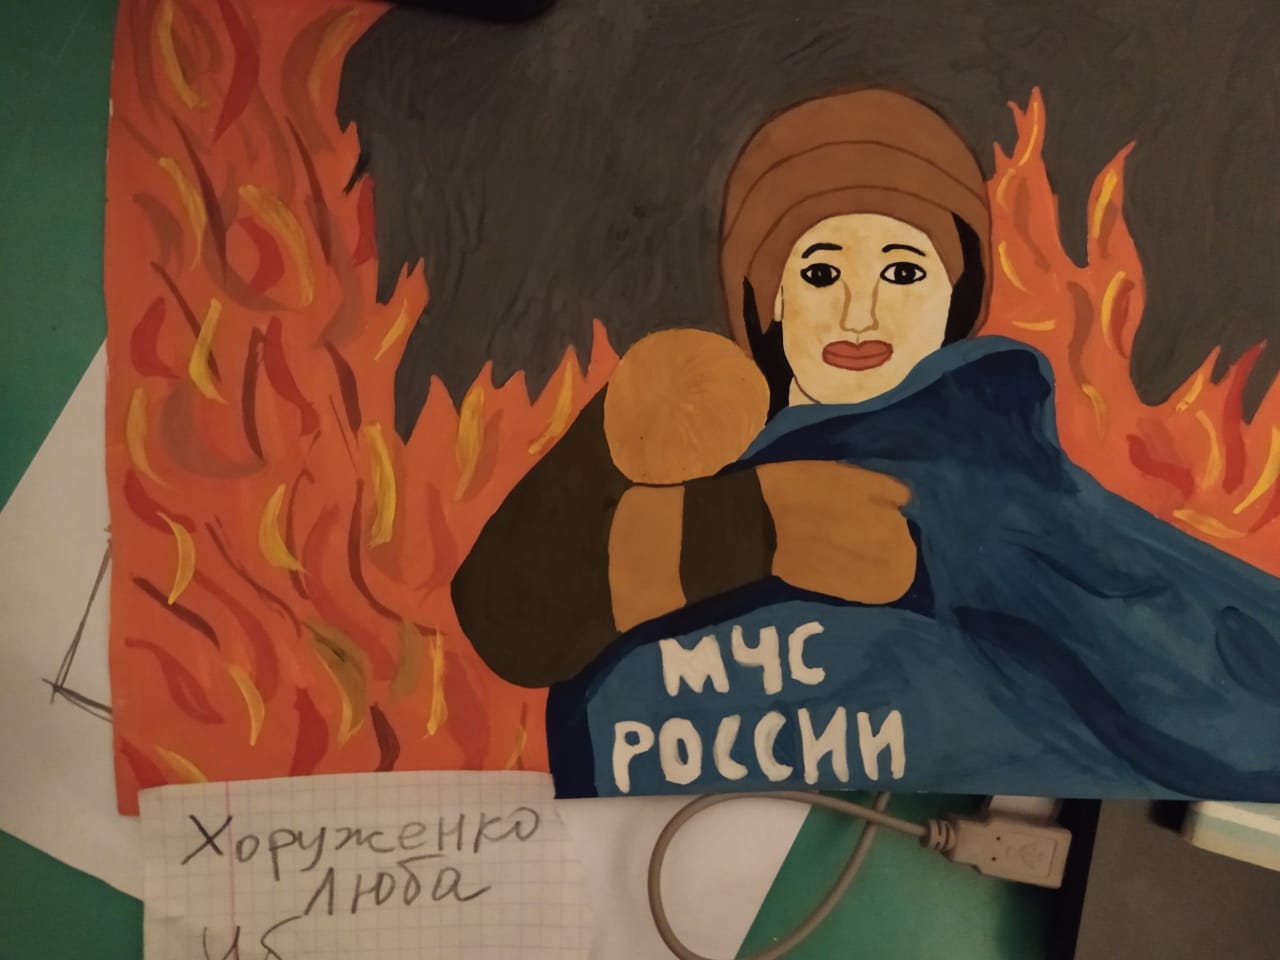 Подведены итоги конкурса рисунков, посвященного 30-й годовщине МЧС России